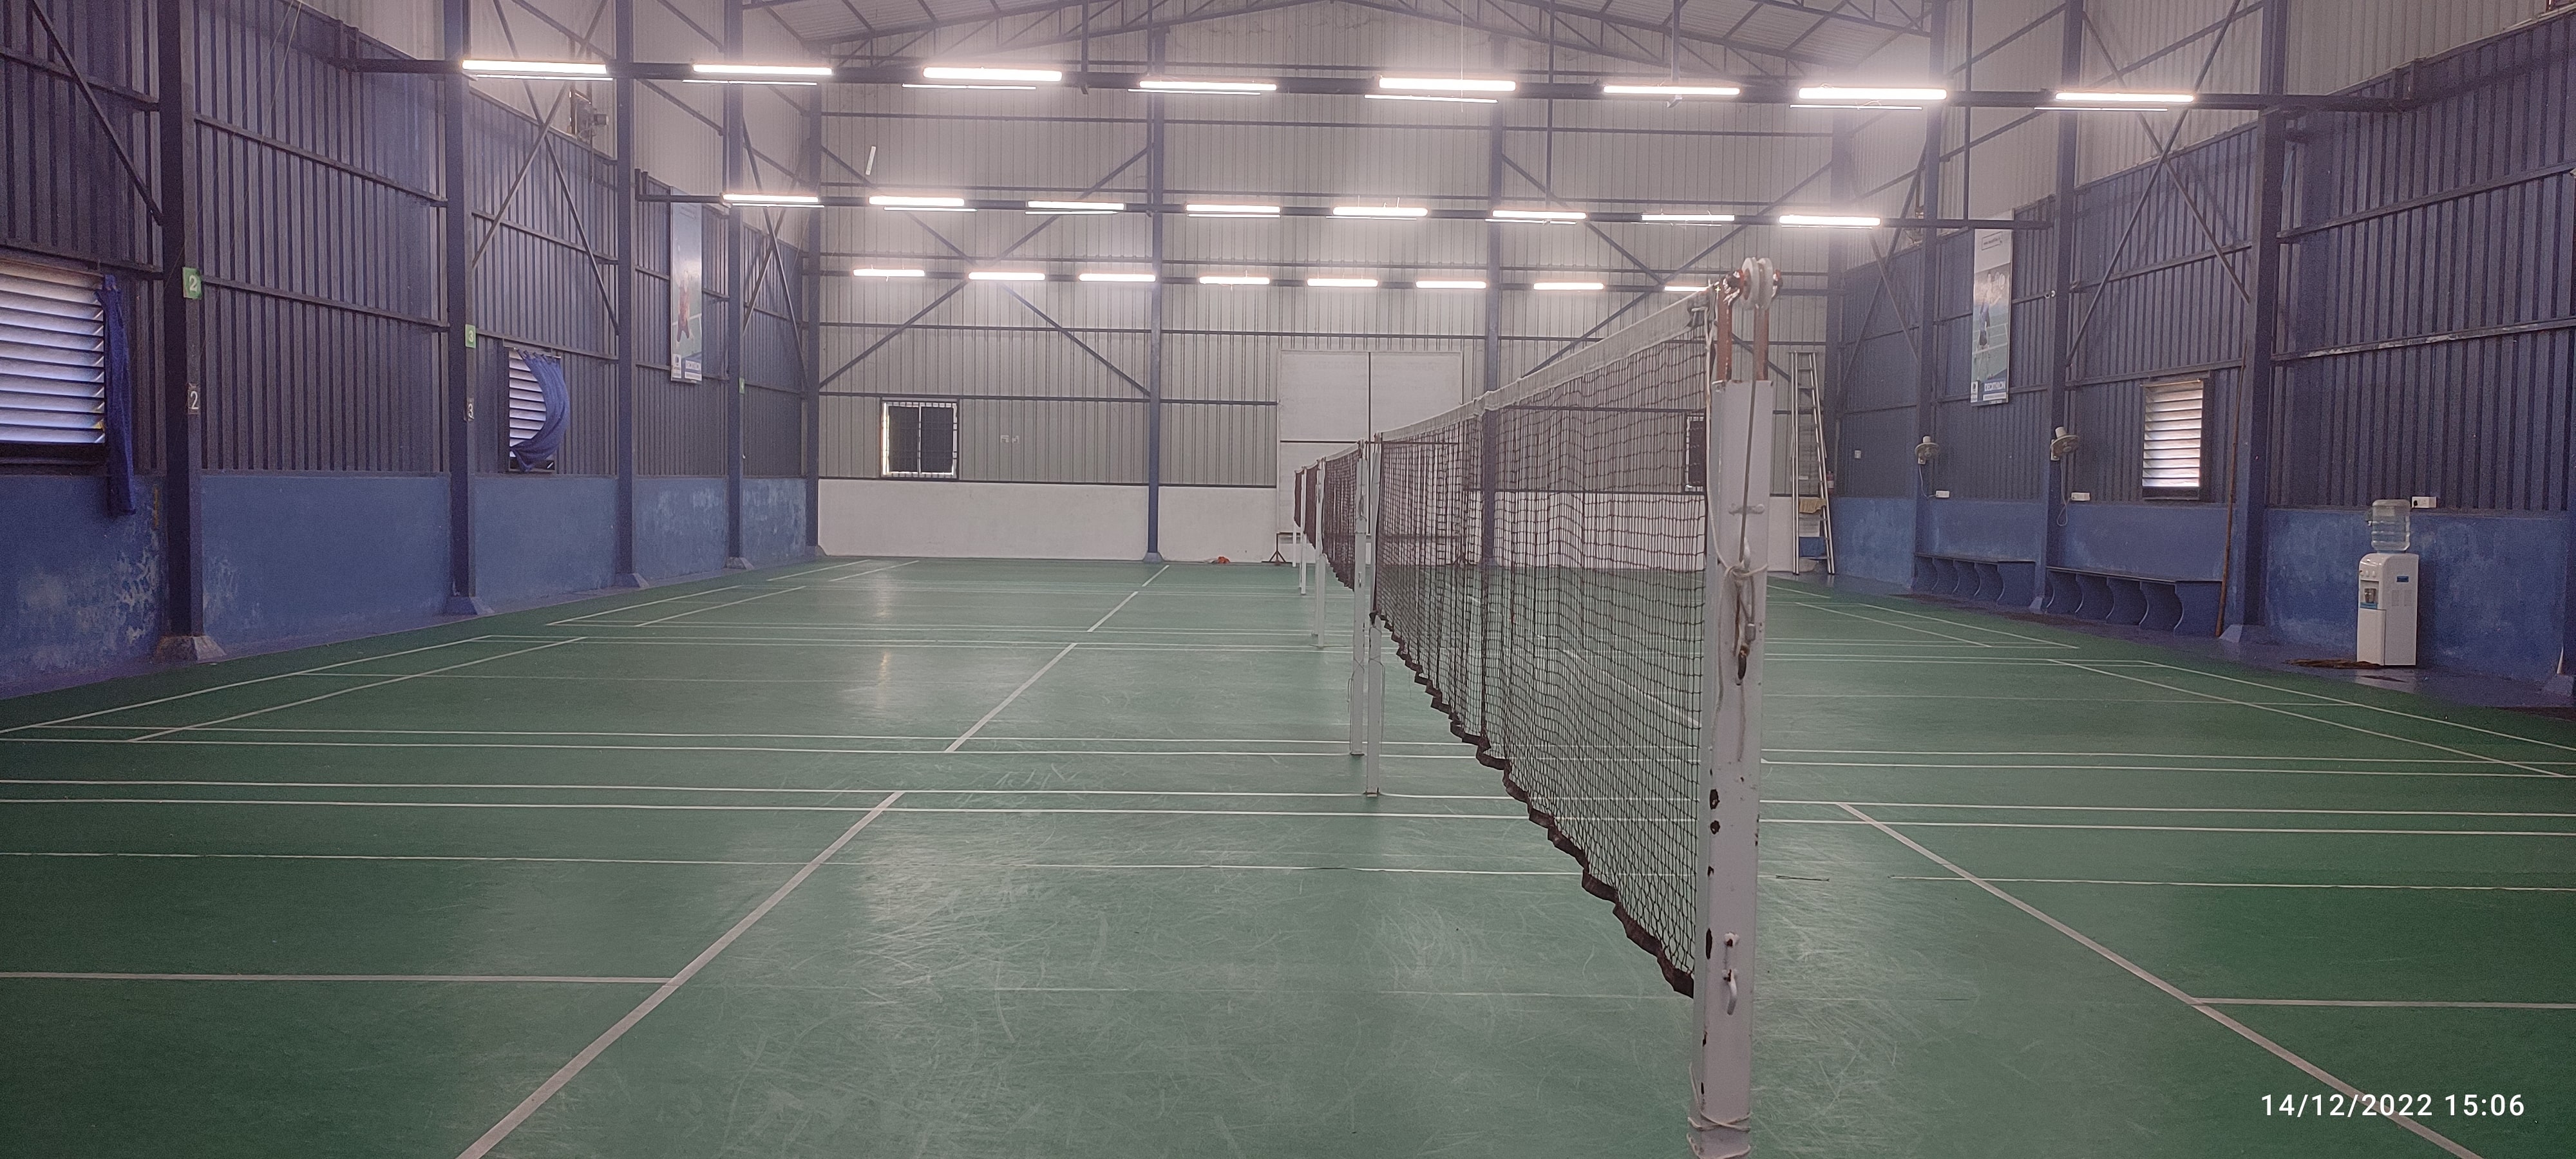 FAME Badminton Academy